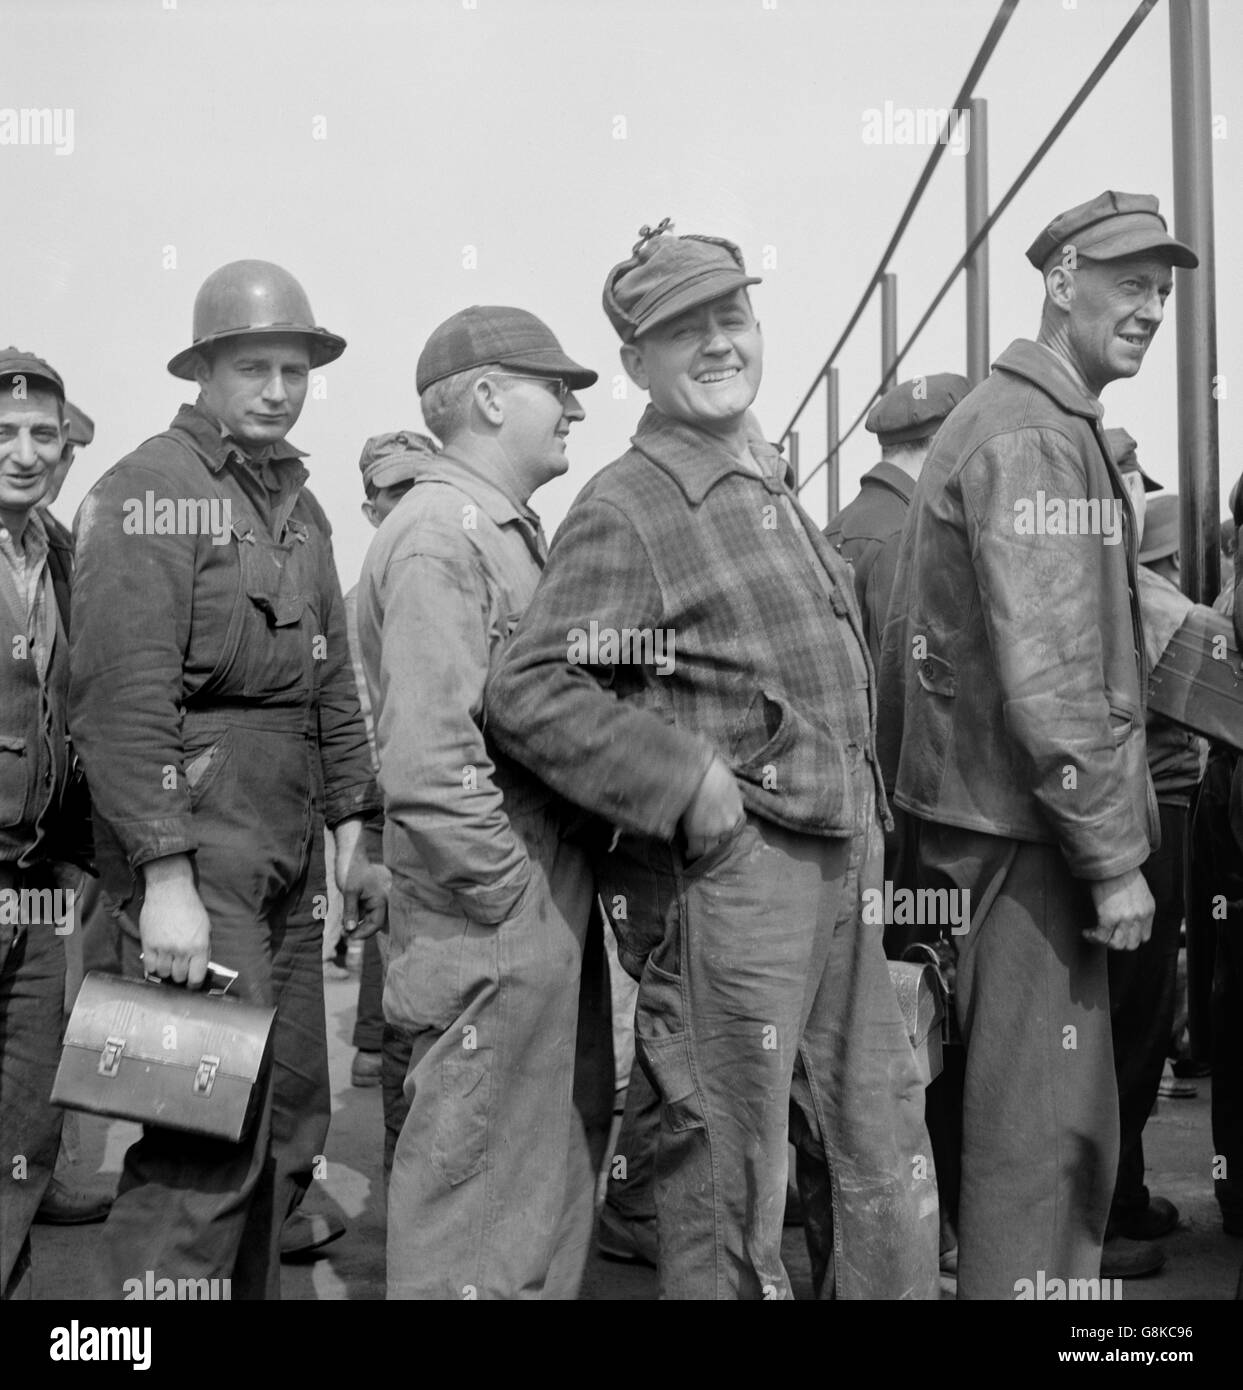 La queue devant les travailleurs, l'horloge temps Bethlehem-Fairfield, chantiers navals, Baltimore, Maryland, USA, Arthur S. Siegel pour Office of War Information, Mai 1943 Banque D'Images